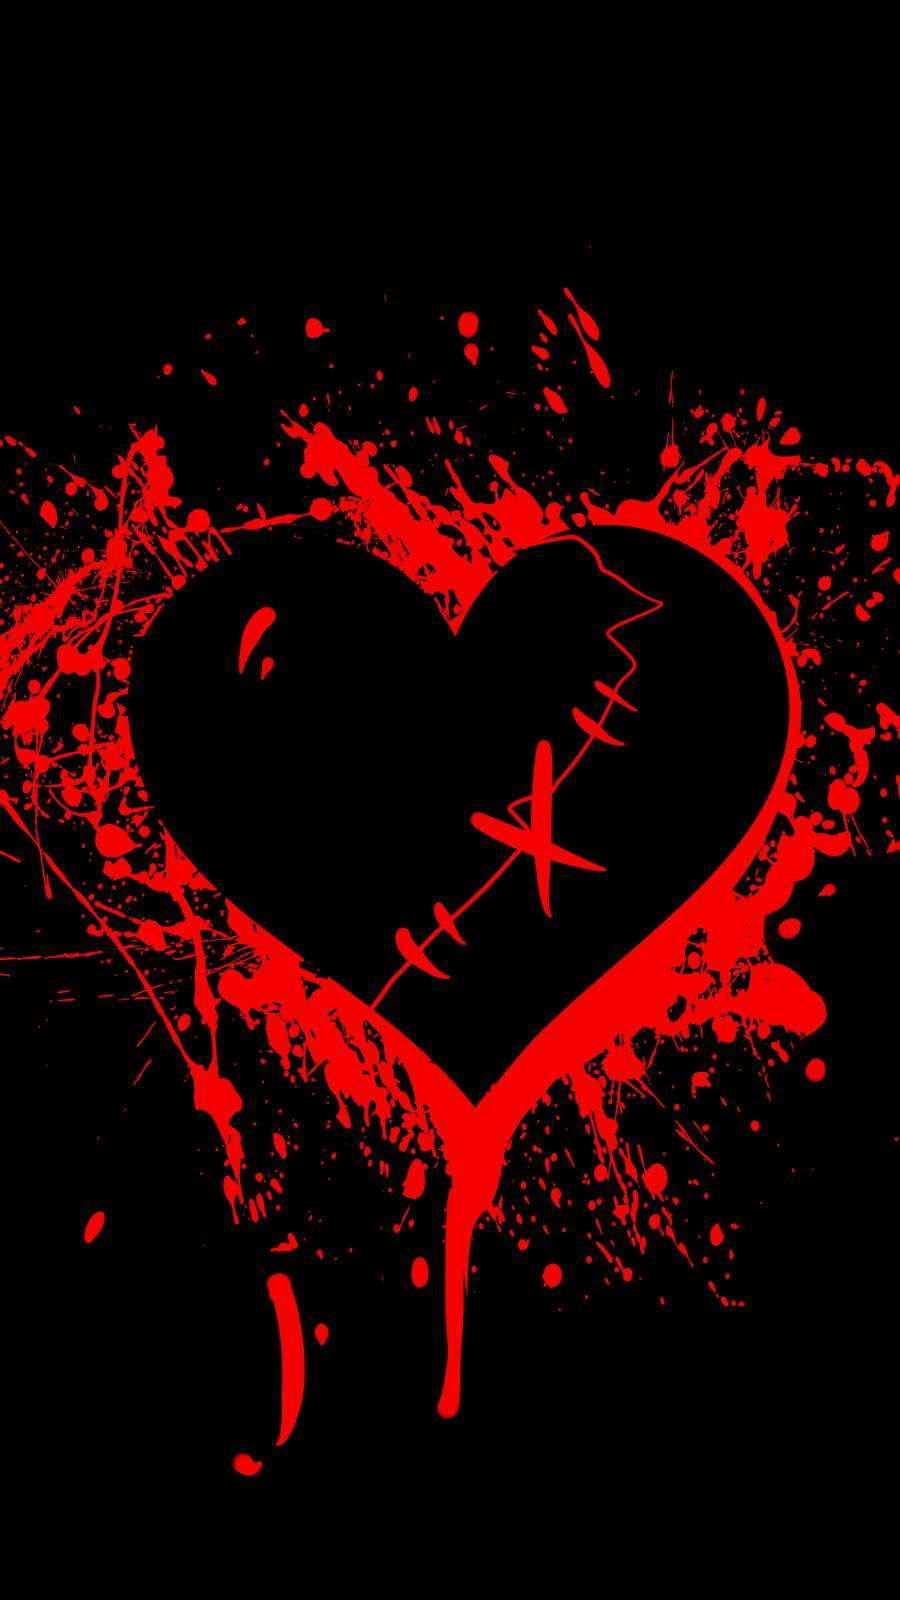 shattered black heart